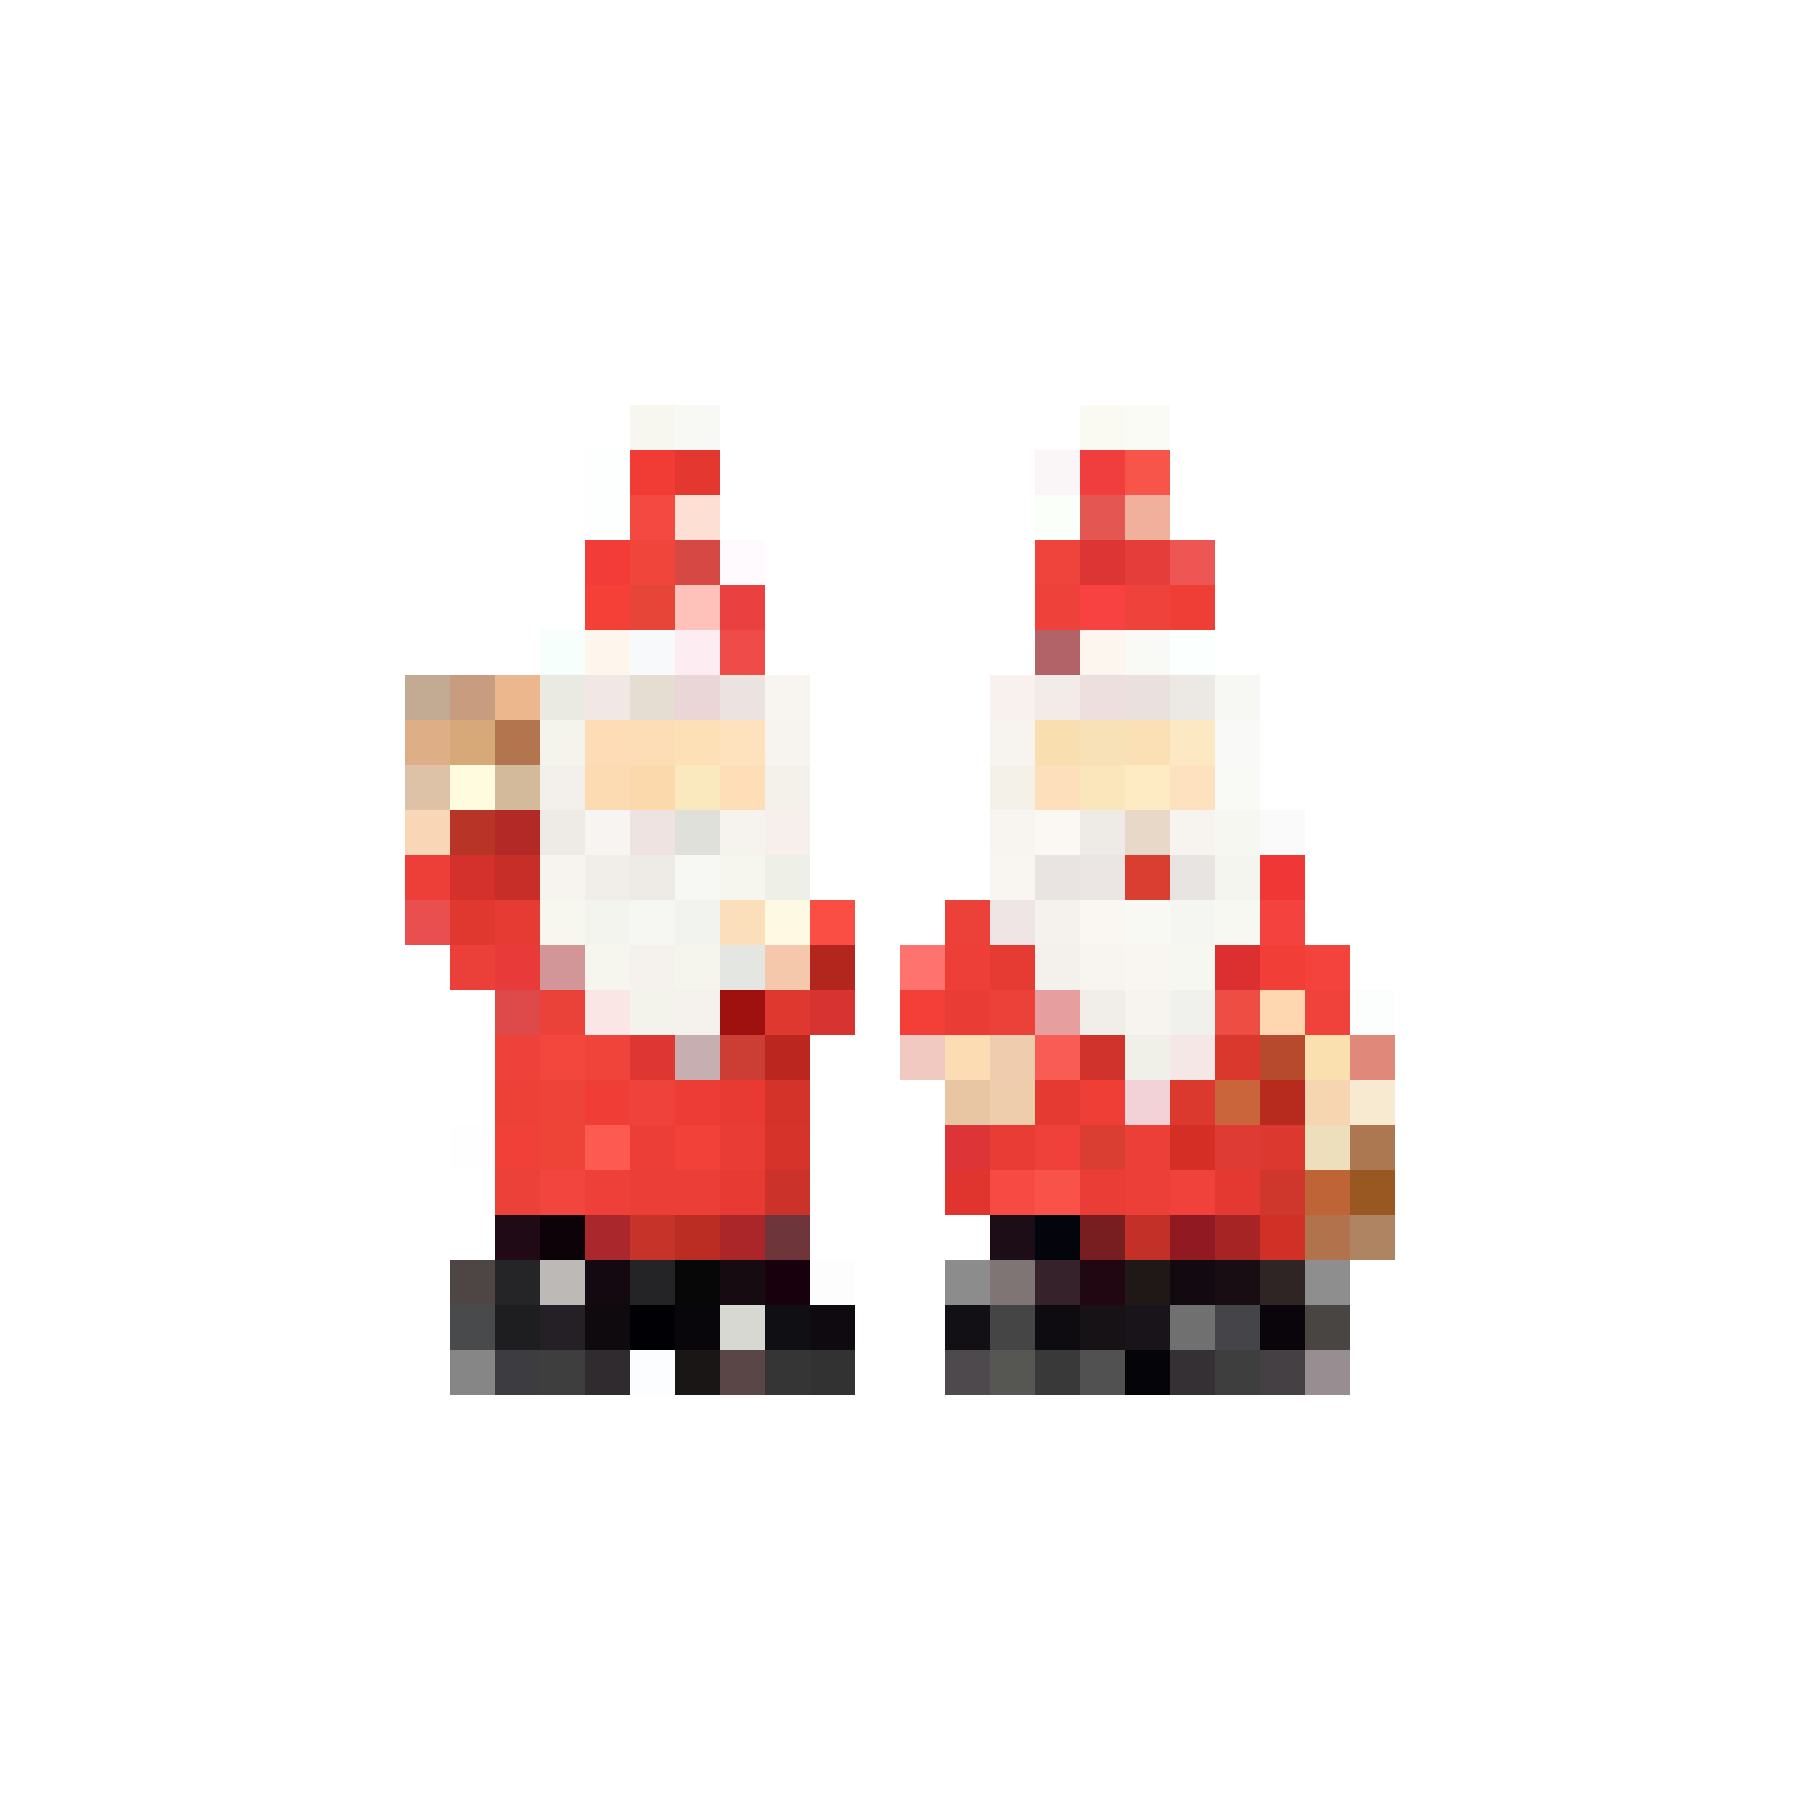 Dream Team: Decorazione natalize Santa, fr. 2.80/2 pezzi, su microspot.ch.